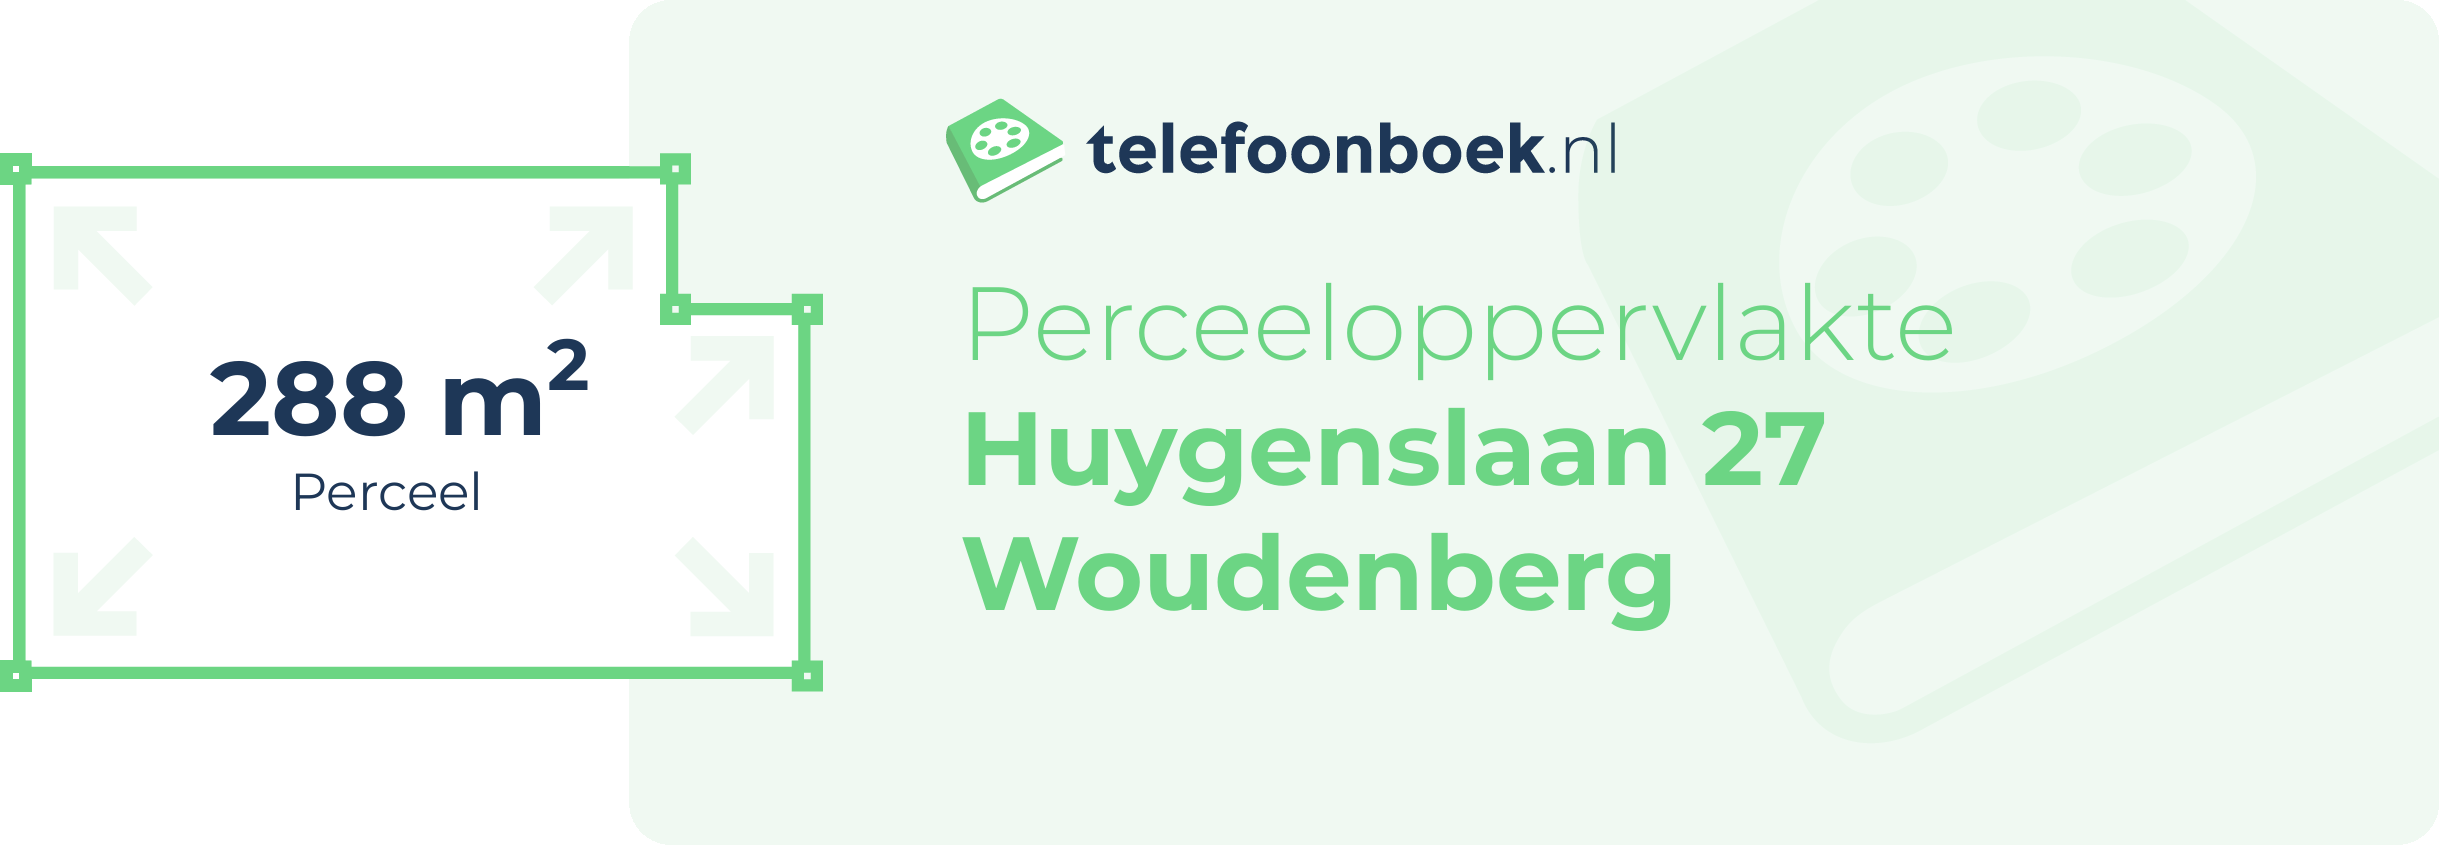 Perceeloppervlakte Huygenslaan 27 Woudenberg